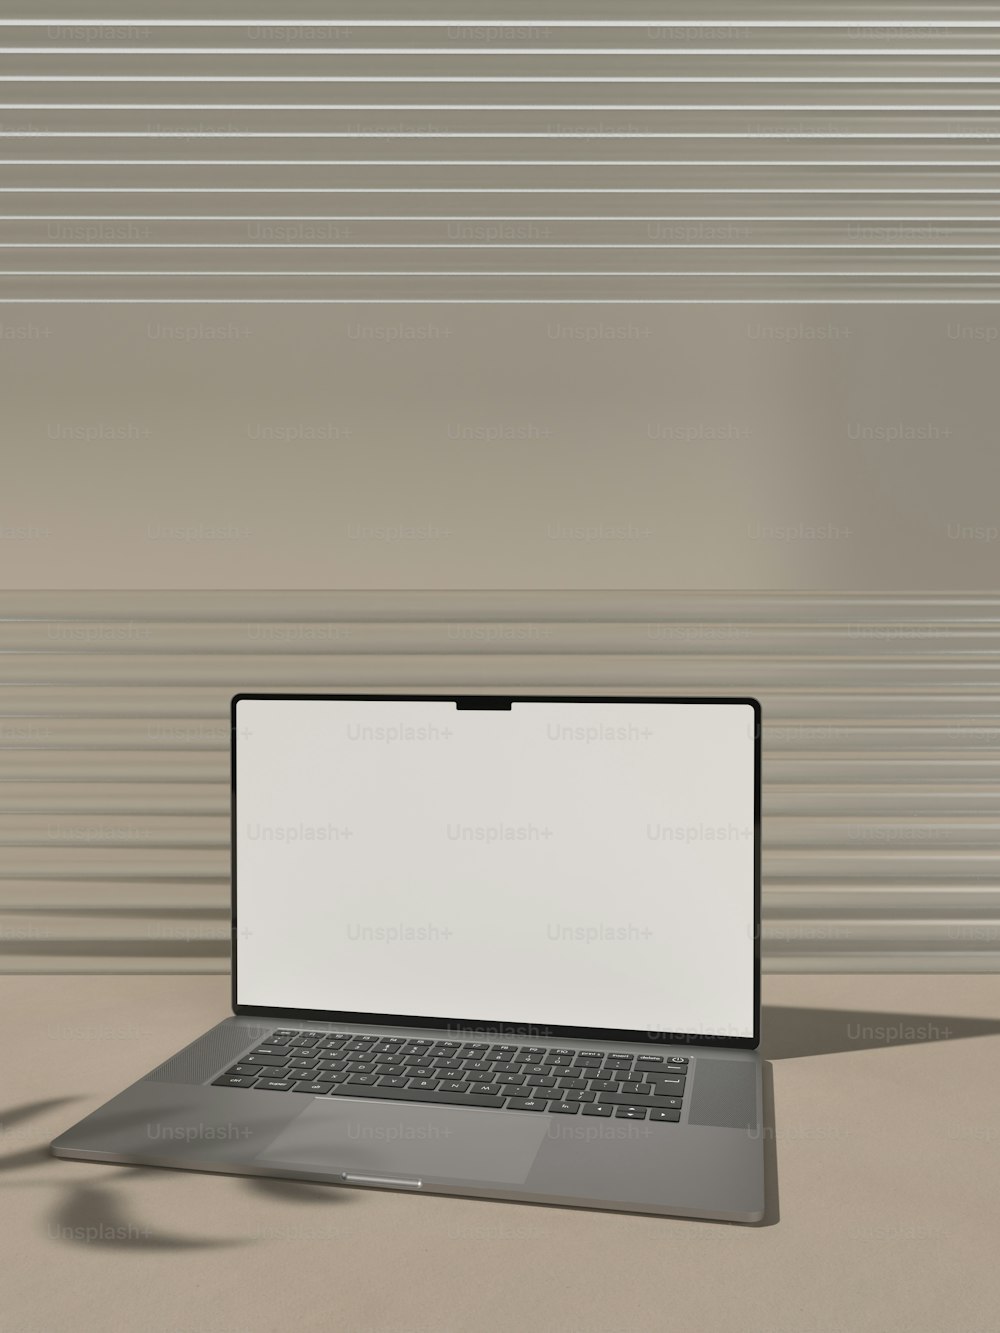 um computador portátil sentado em cima de uma mesa